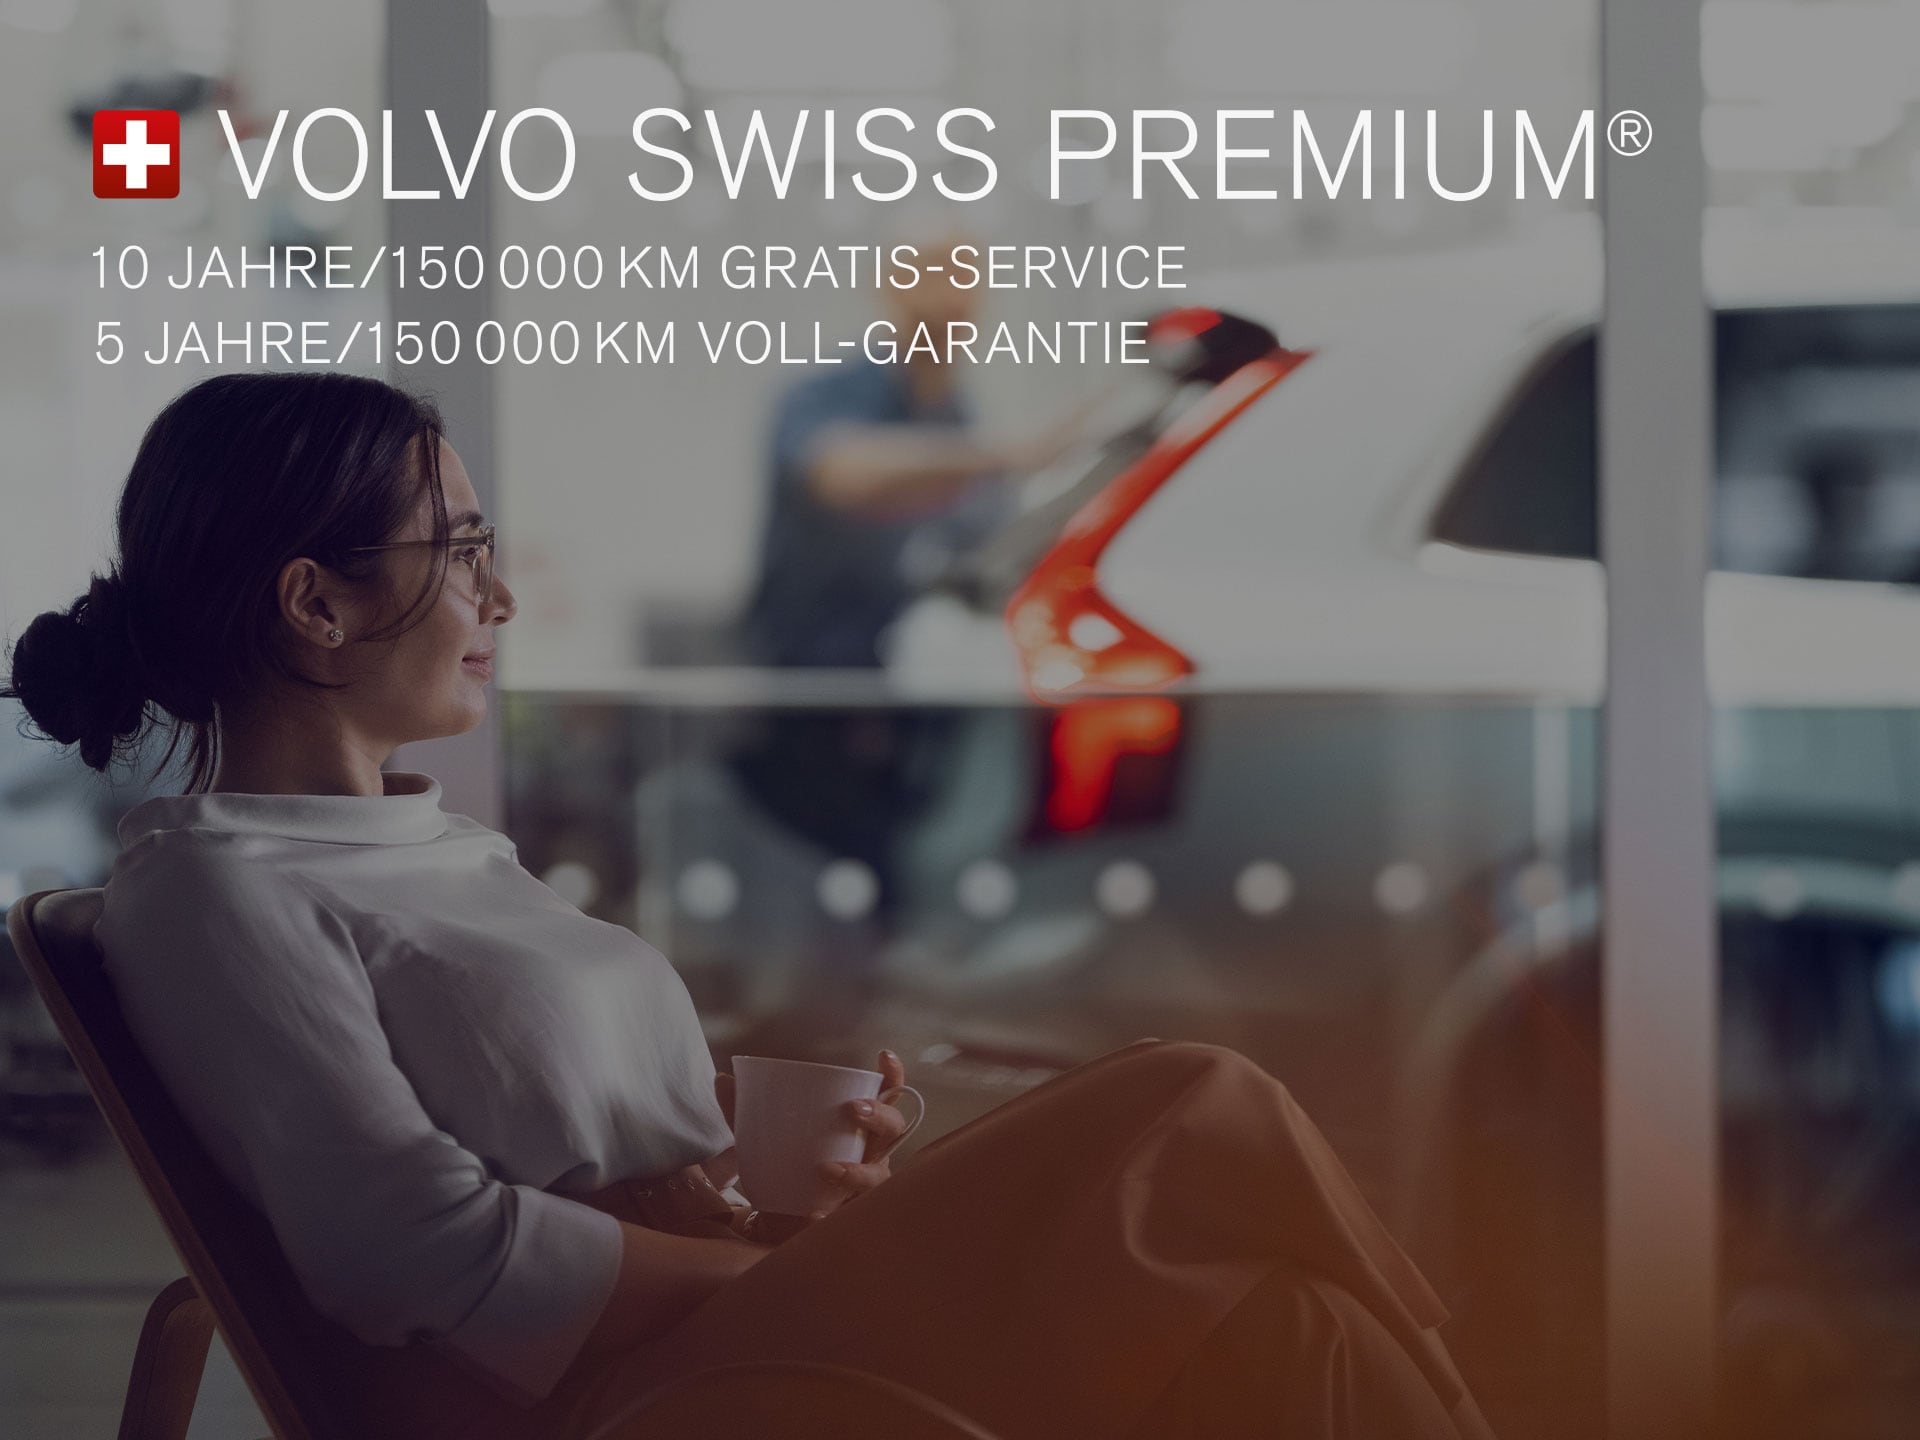 Volvo Swiss Premium Beschreibung